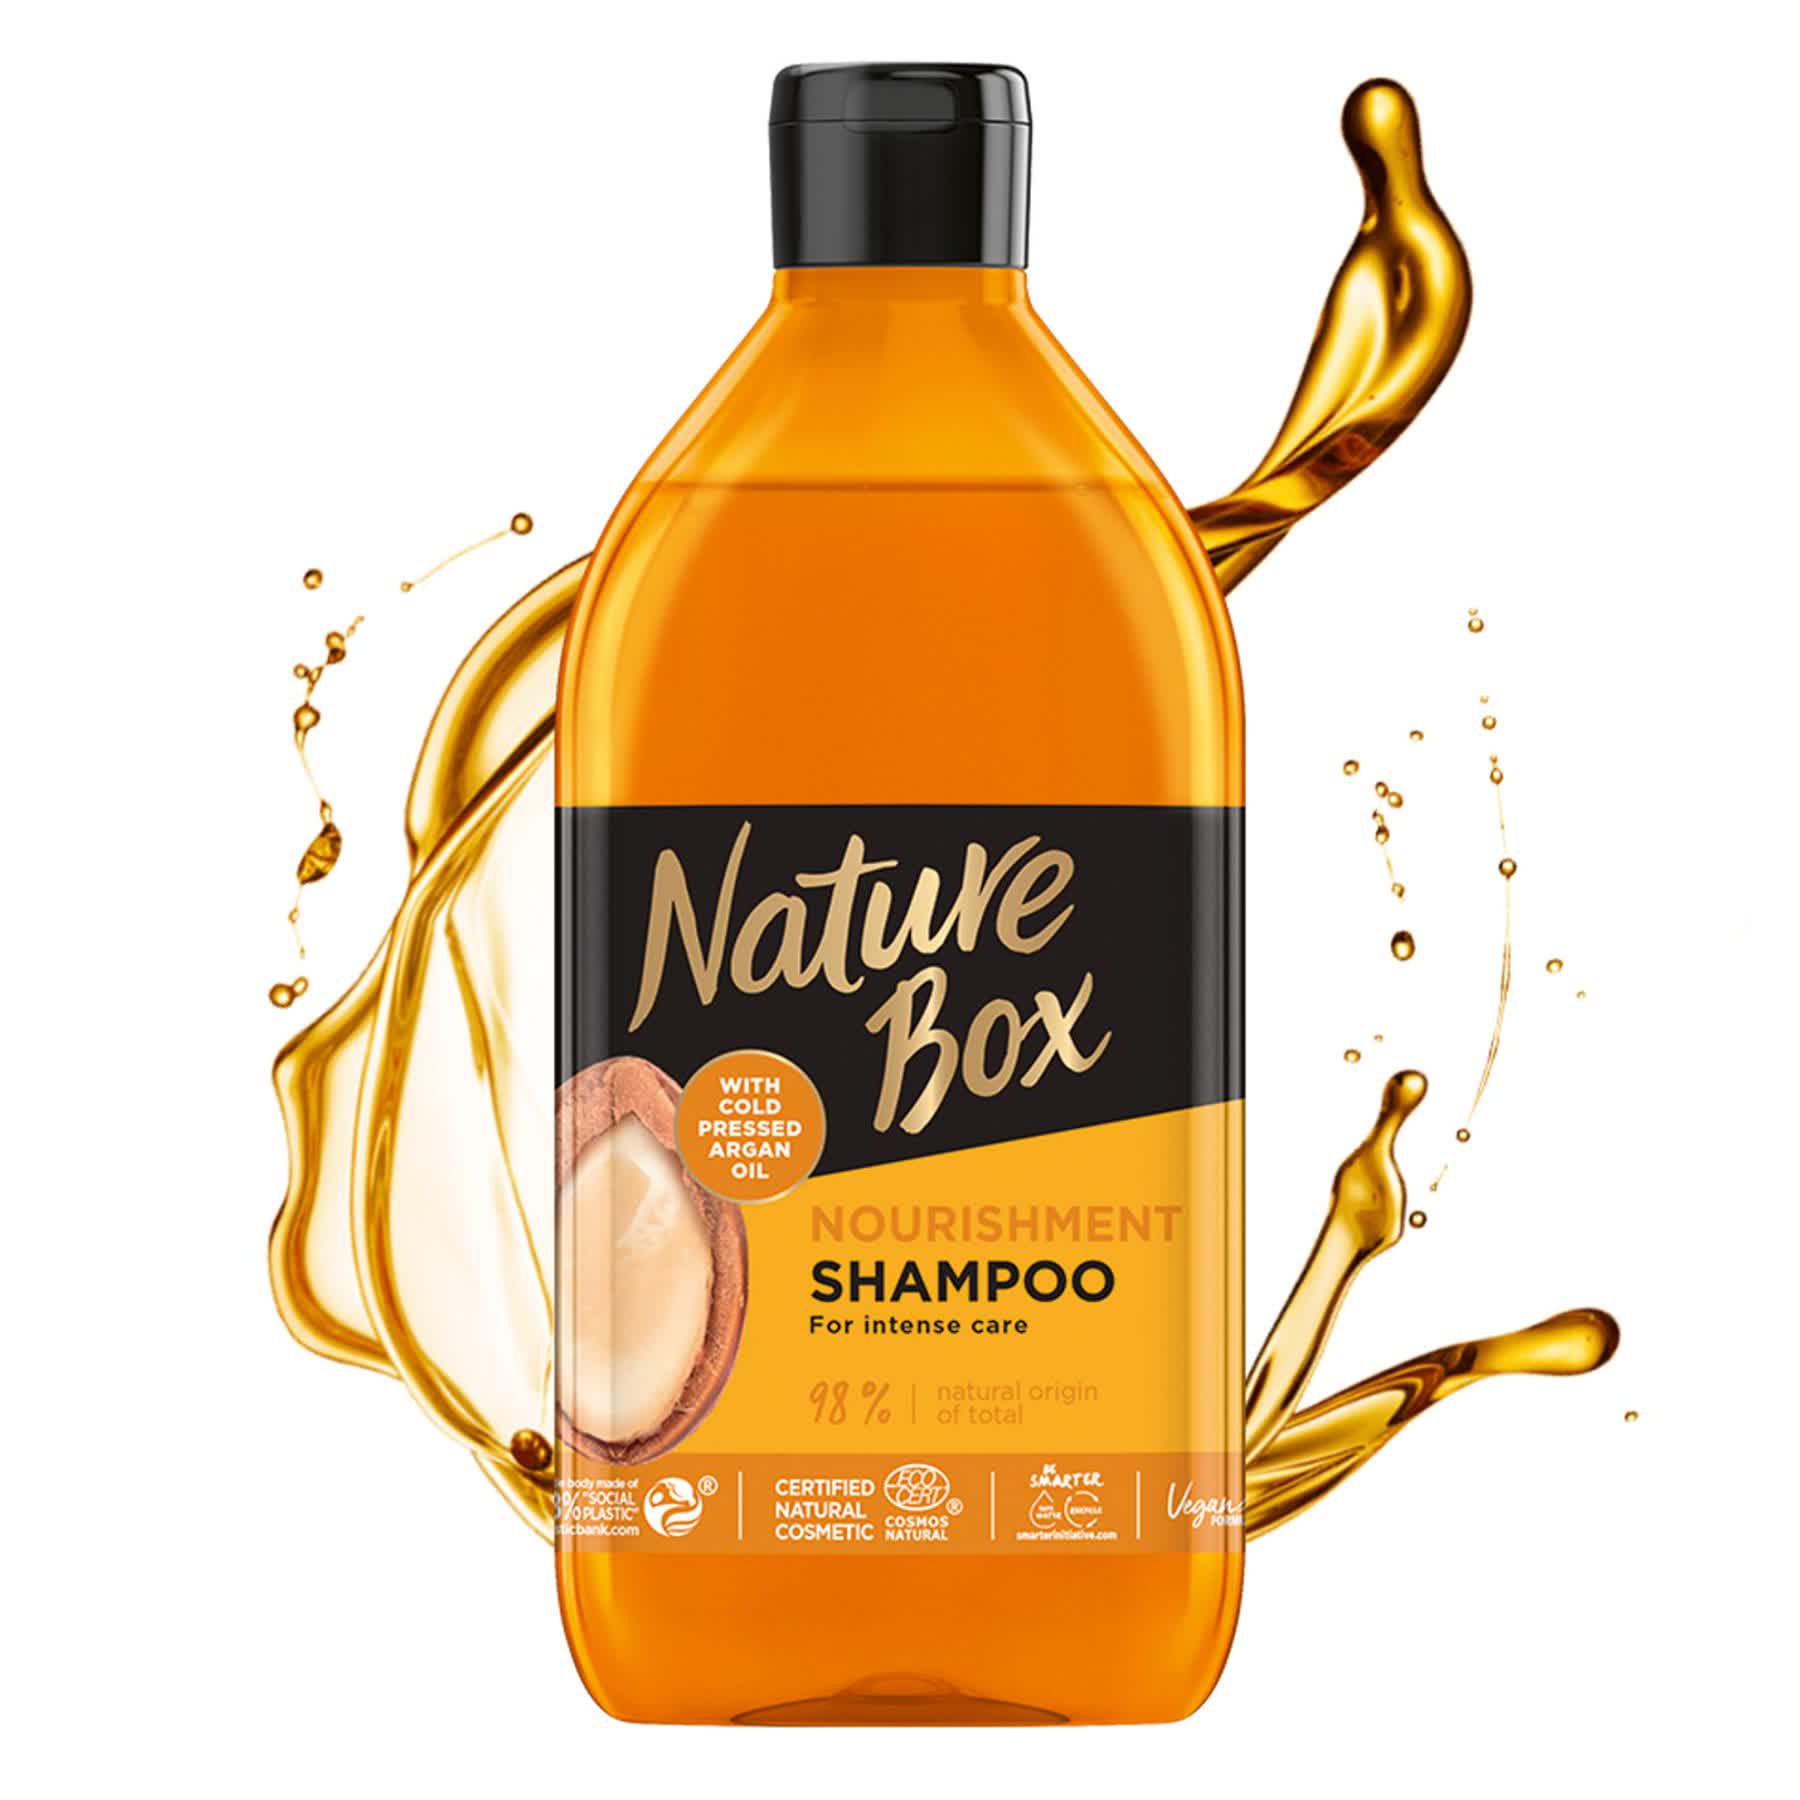 Шампунь Nature Box для питания и интенсивного ухода за волосами, с аргановым маслом холодного отжима, 385 мл - фото 3